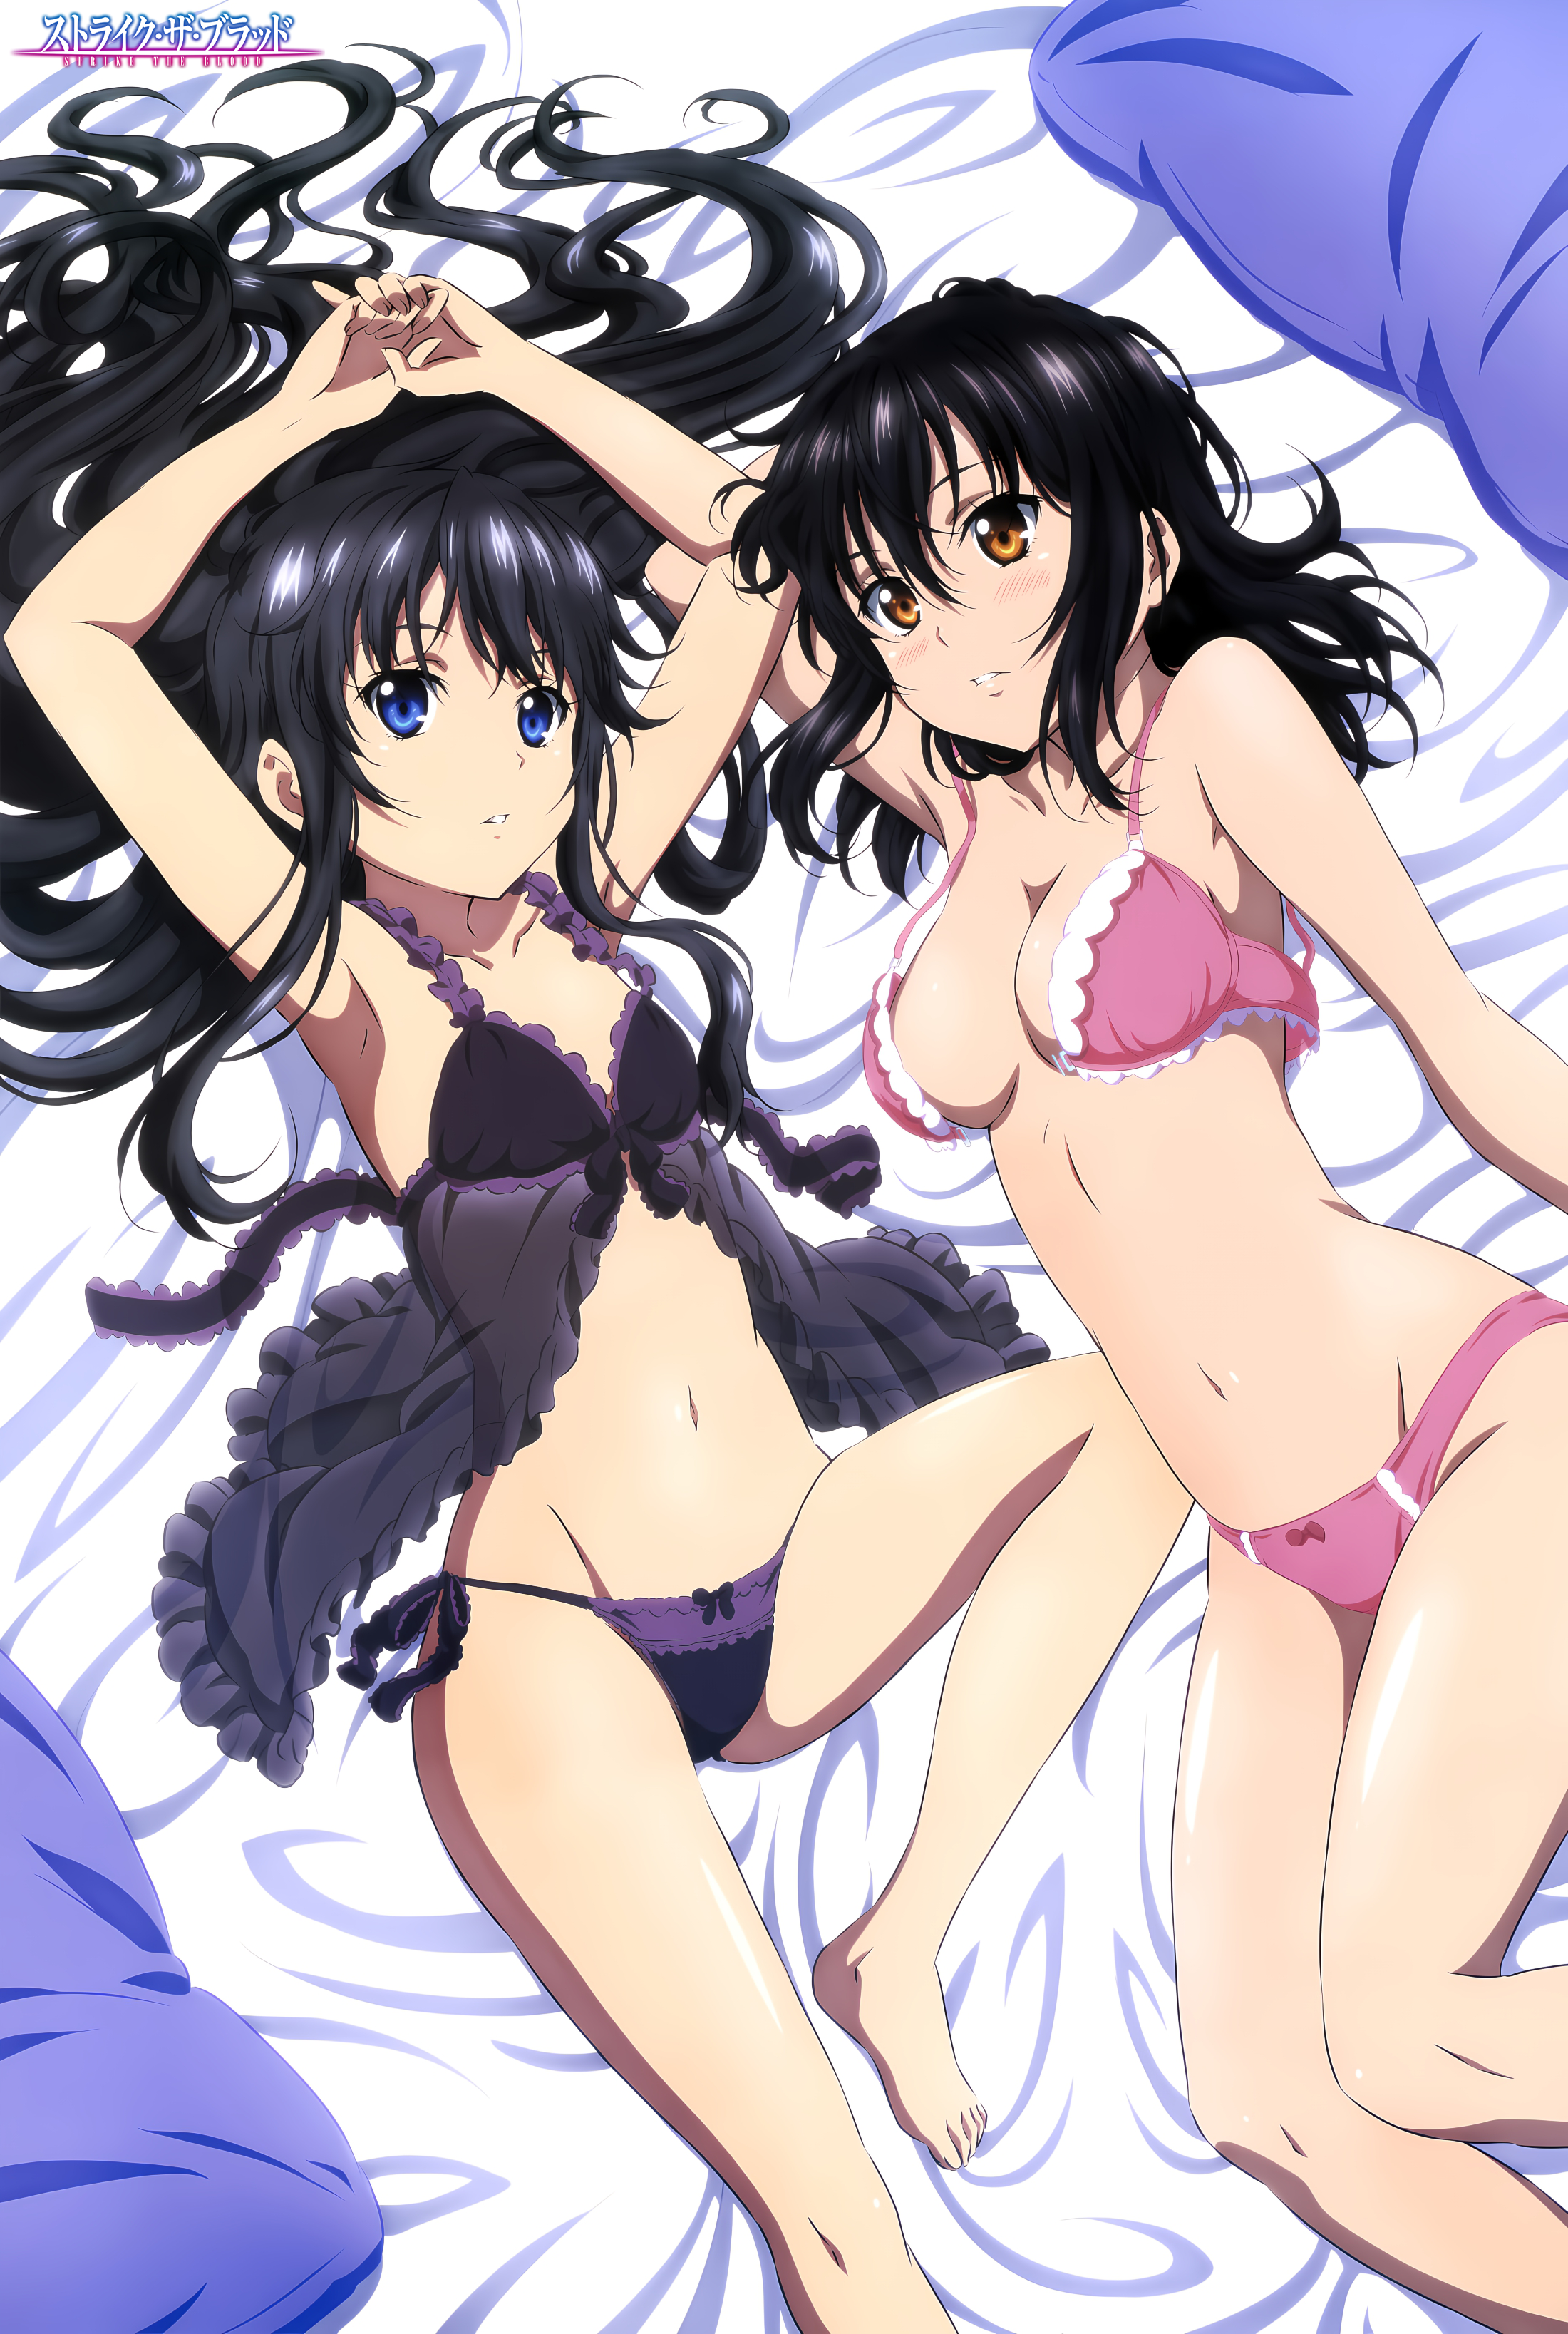 Anime 2200x3274 anime anime girls Strike the Blood Yukina Himeragi Minamiya Natsuki long hair short hair black hair underwear panties open bra thighs in bed